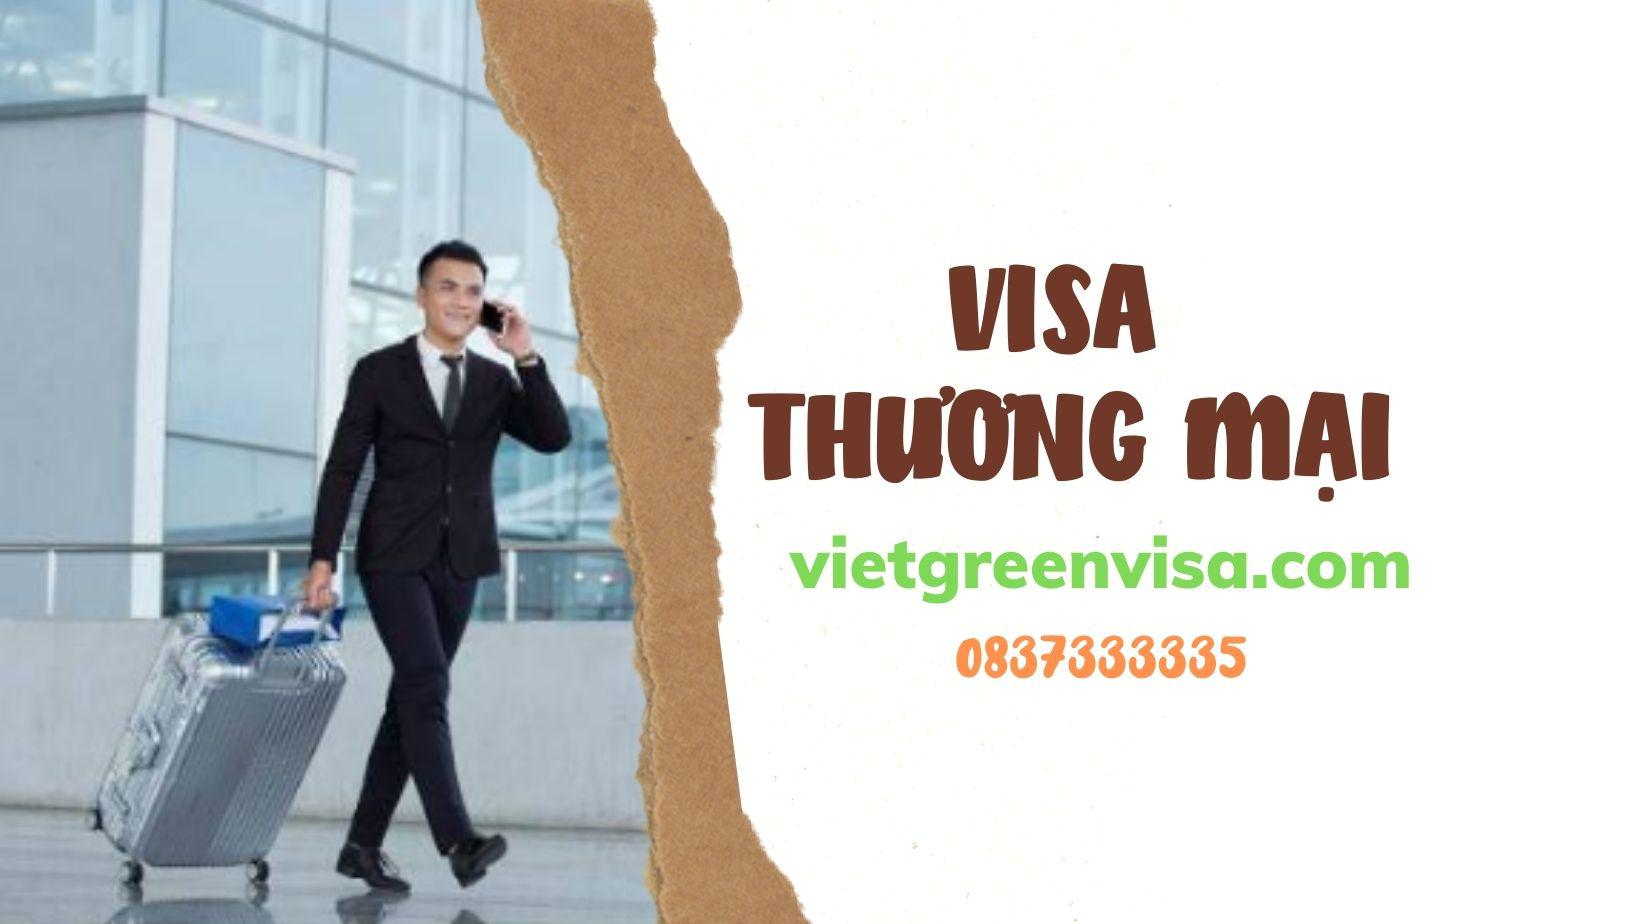 Visa thương mại và những điều cần biết cho nhà đầu tư nước ngoài tại Việt Nam